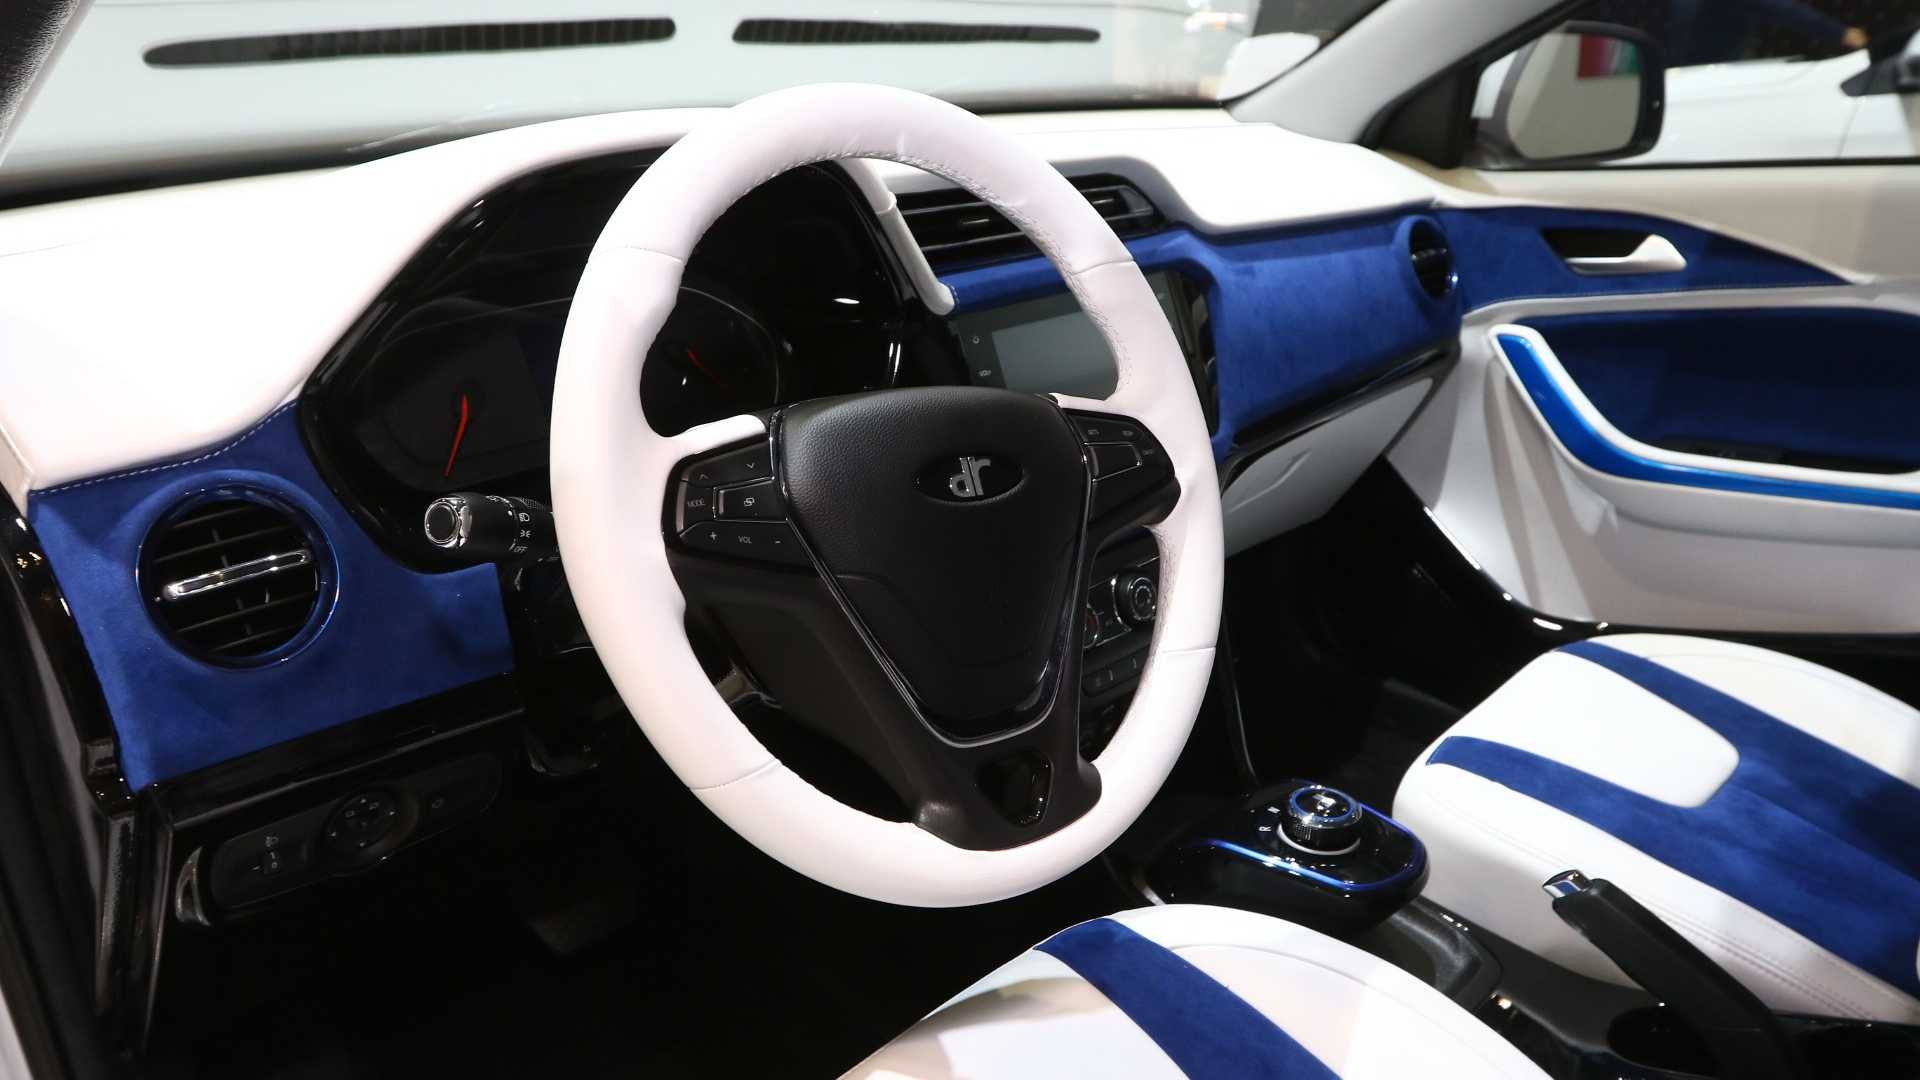 14-حضور محصولات چینی چری در نمایشگاه خودروی ژنو 2019